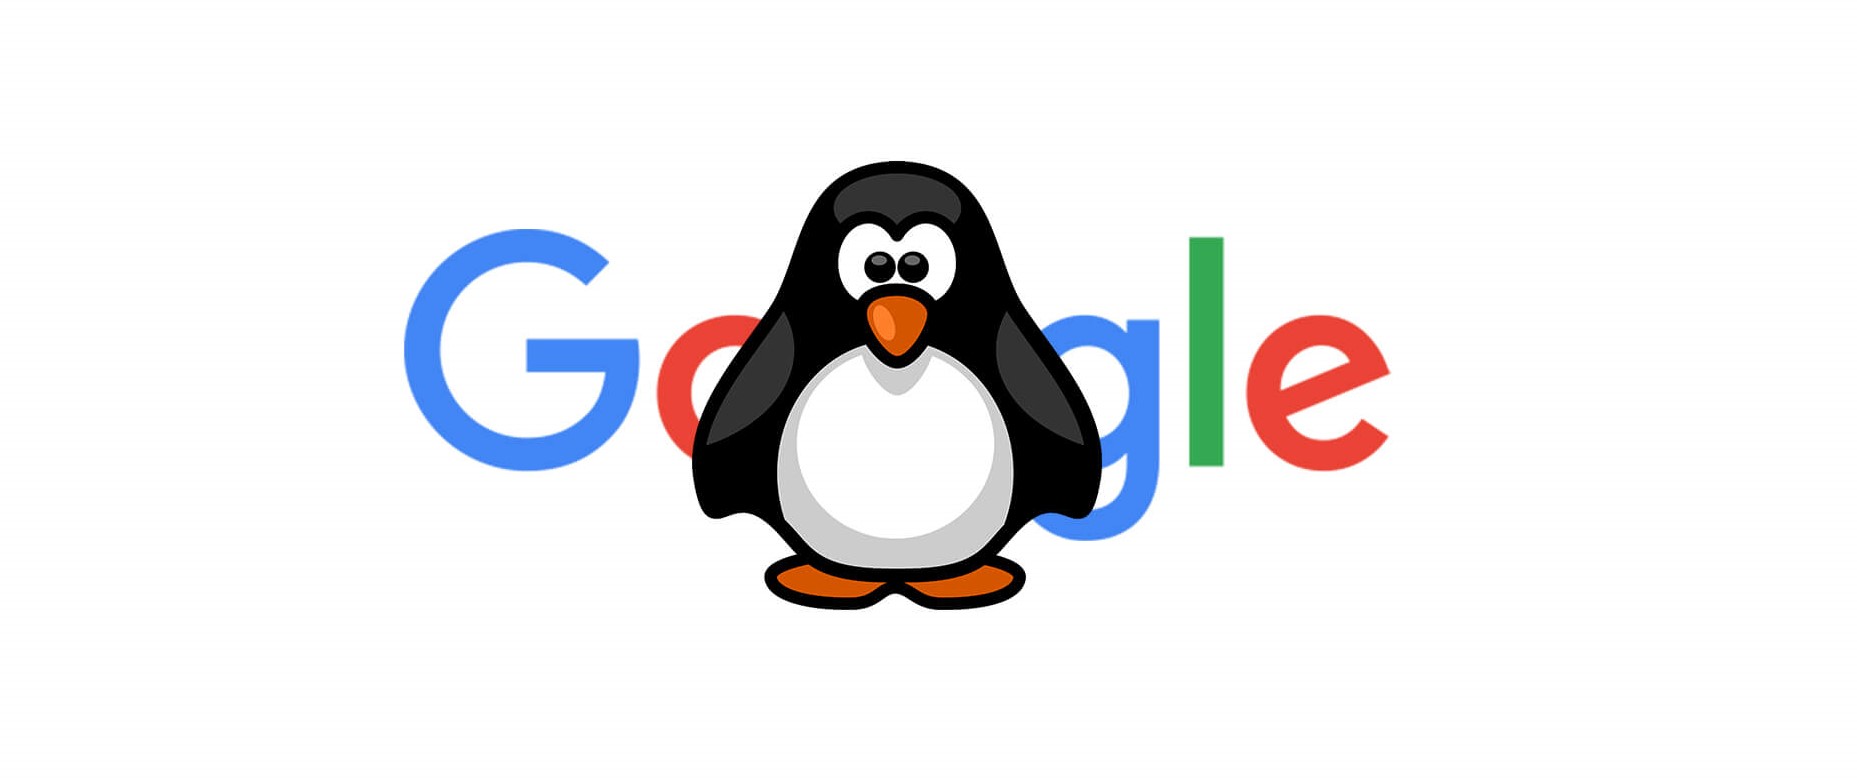 الگوریتم پنگوئن چیست و چطور وب سایت را جریمه می کند؟